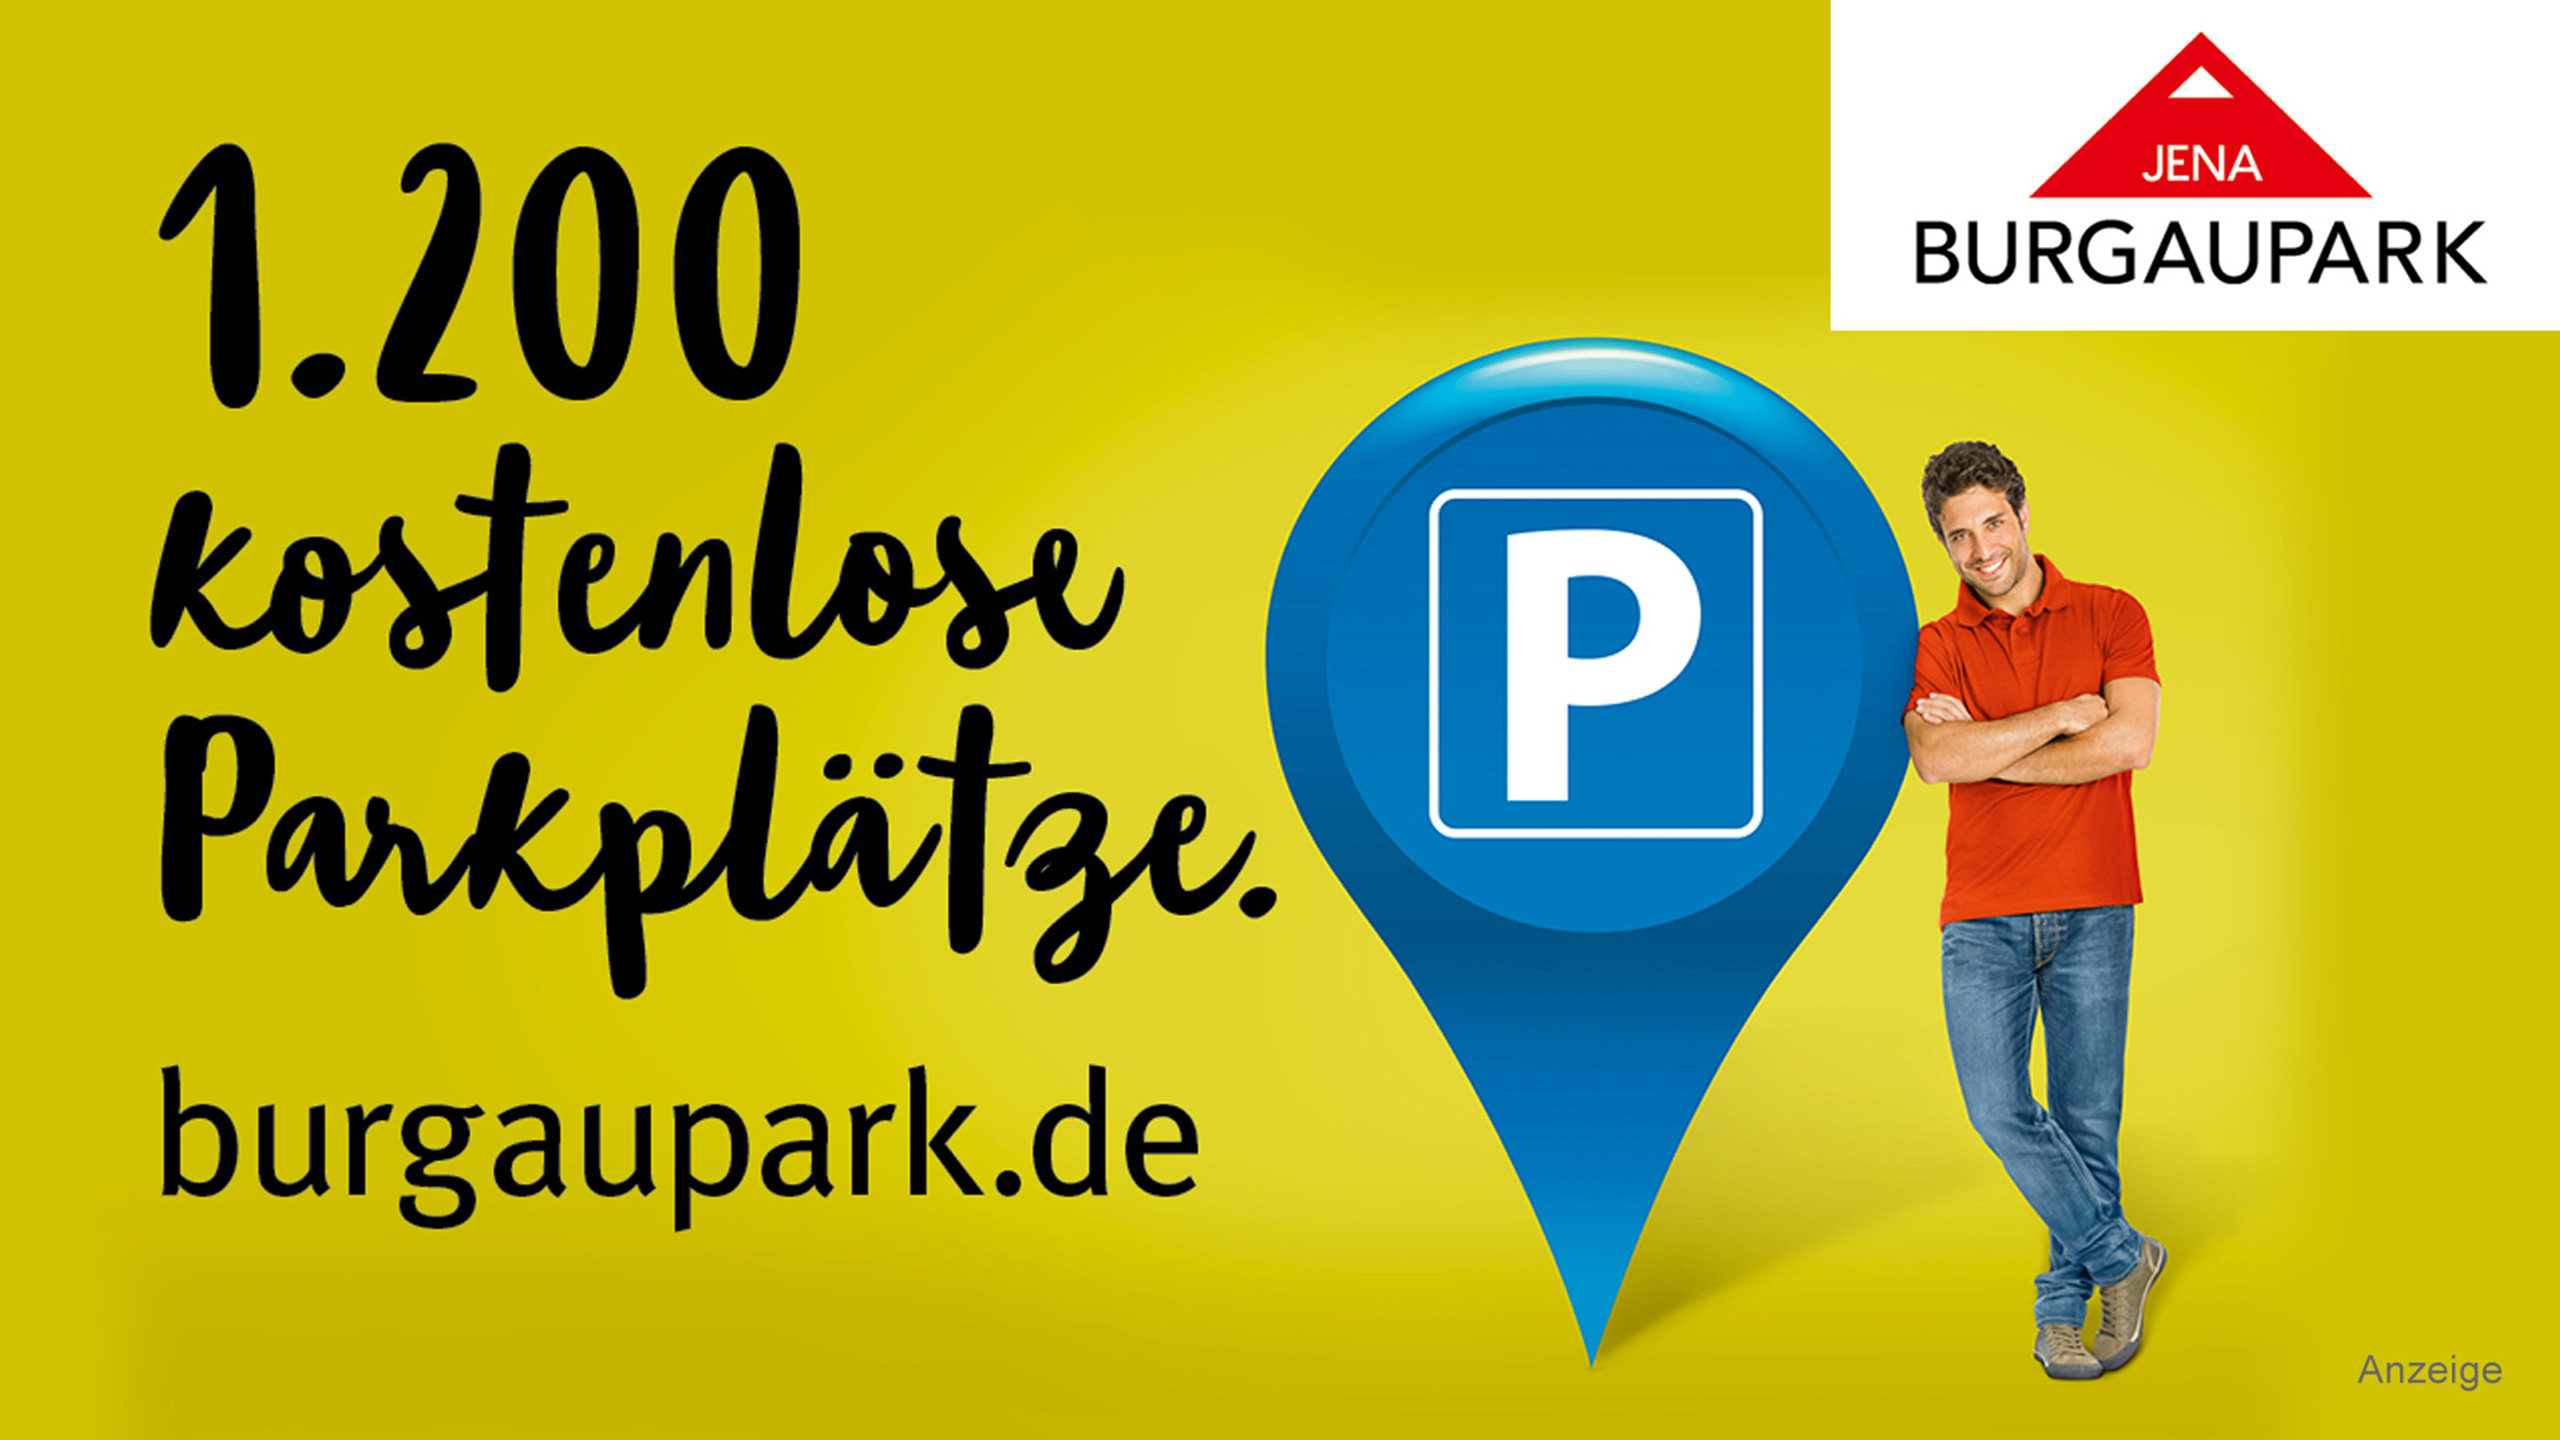 Burgaupark - kostenlose Parkplätze